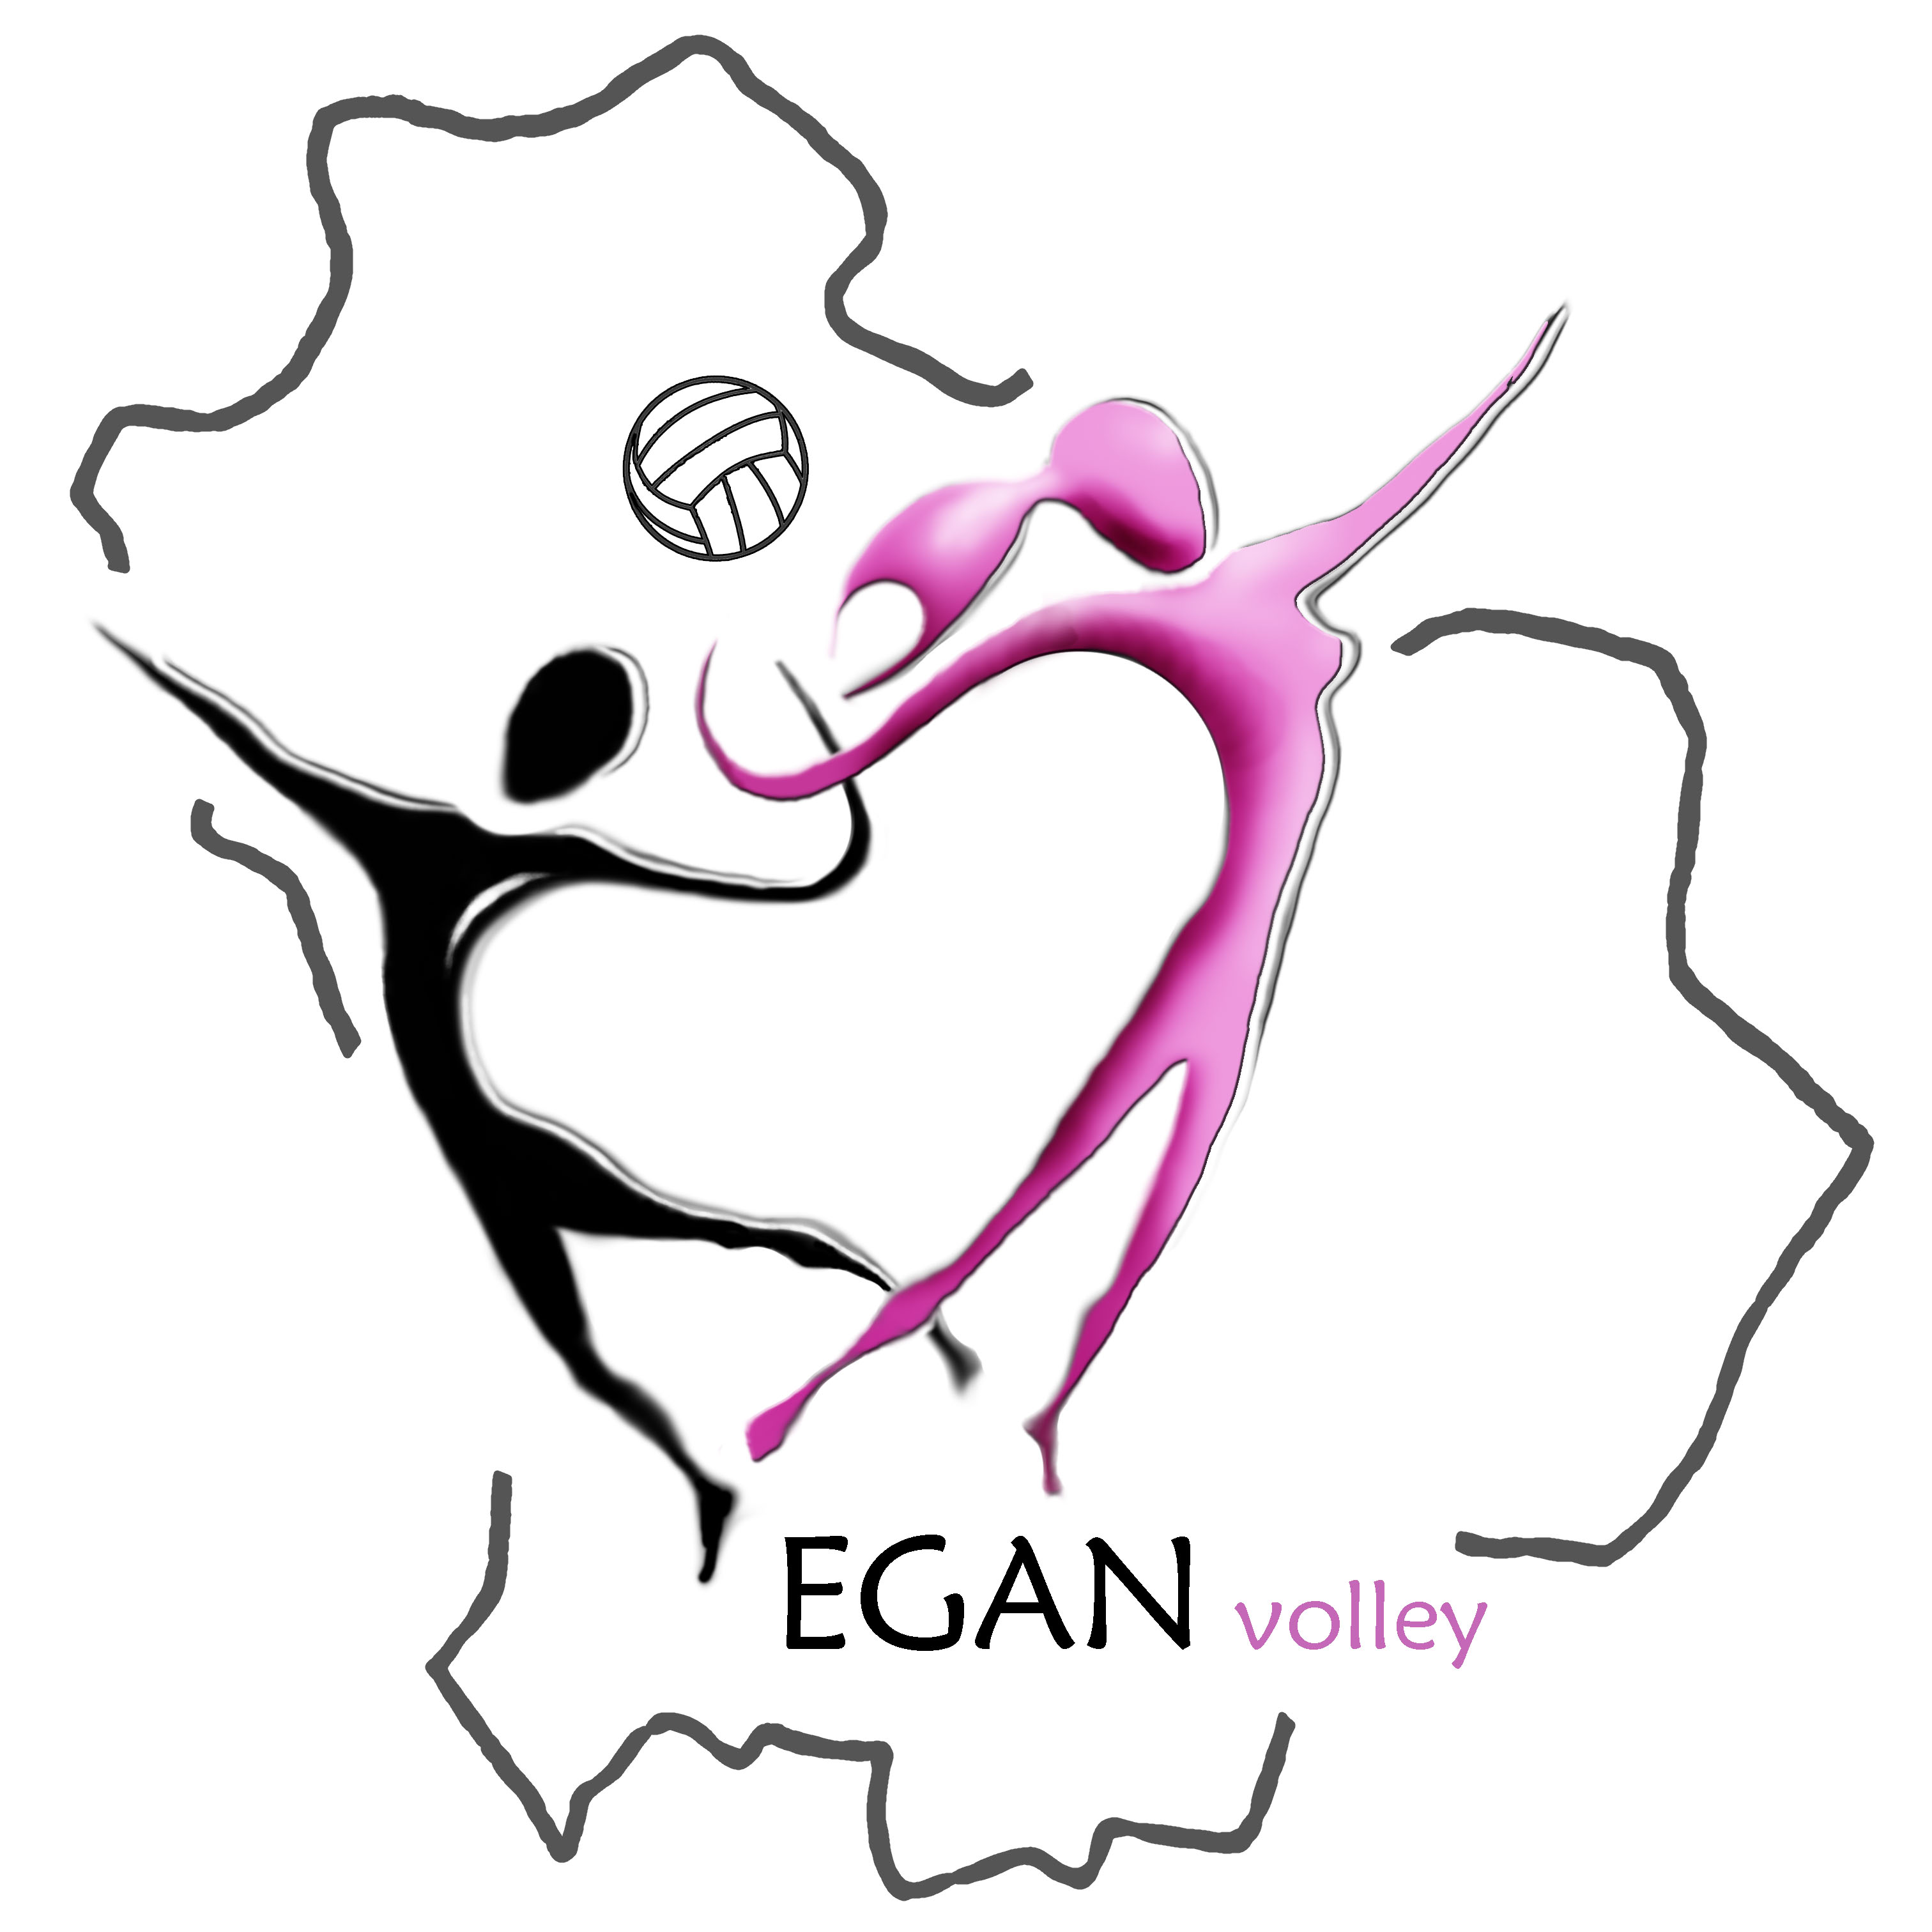 Egan Volley